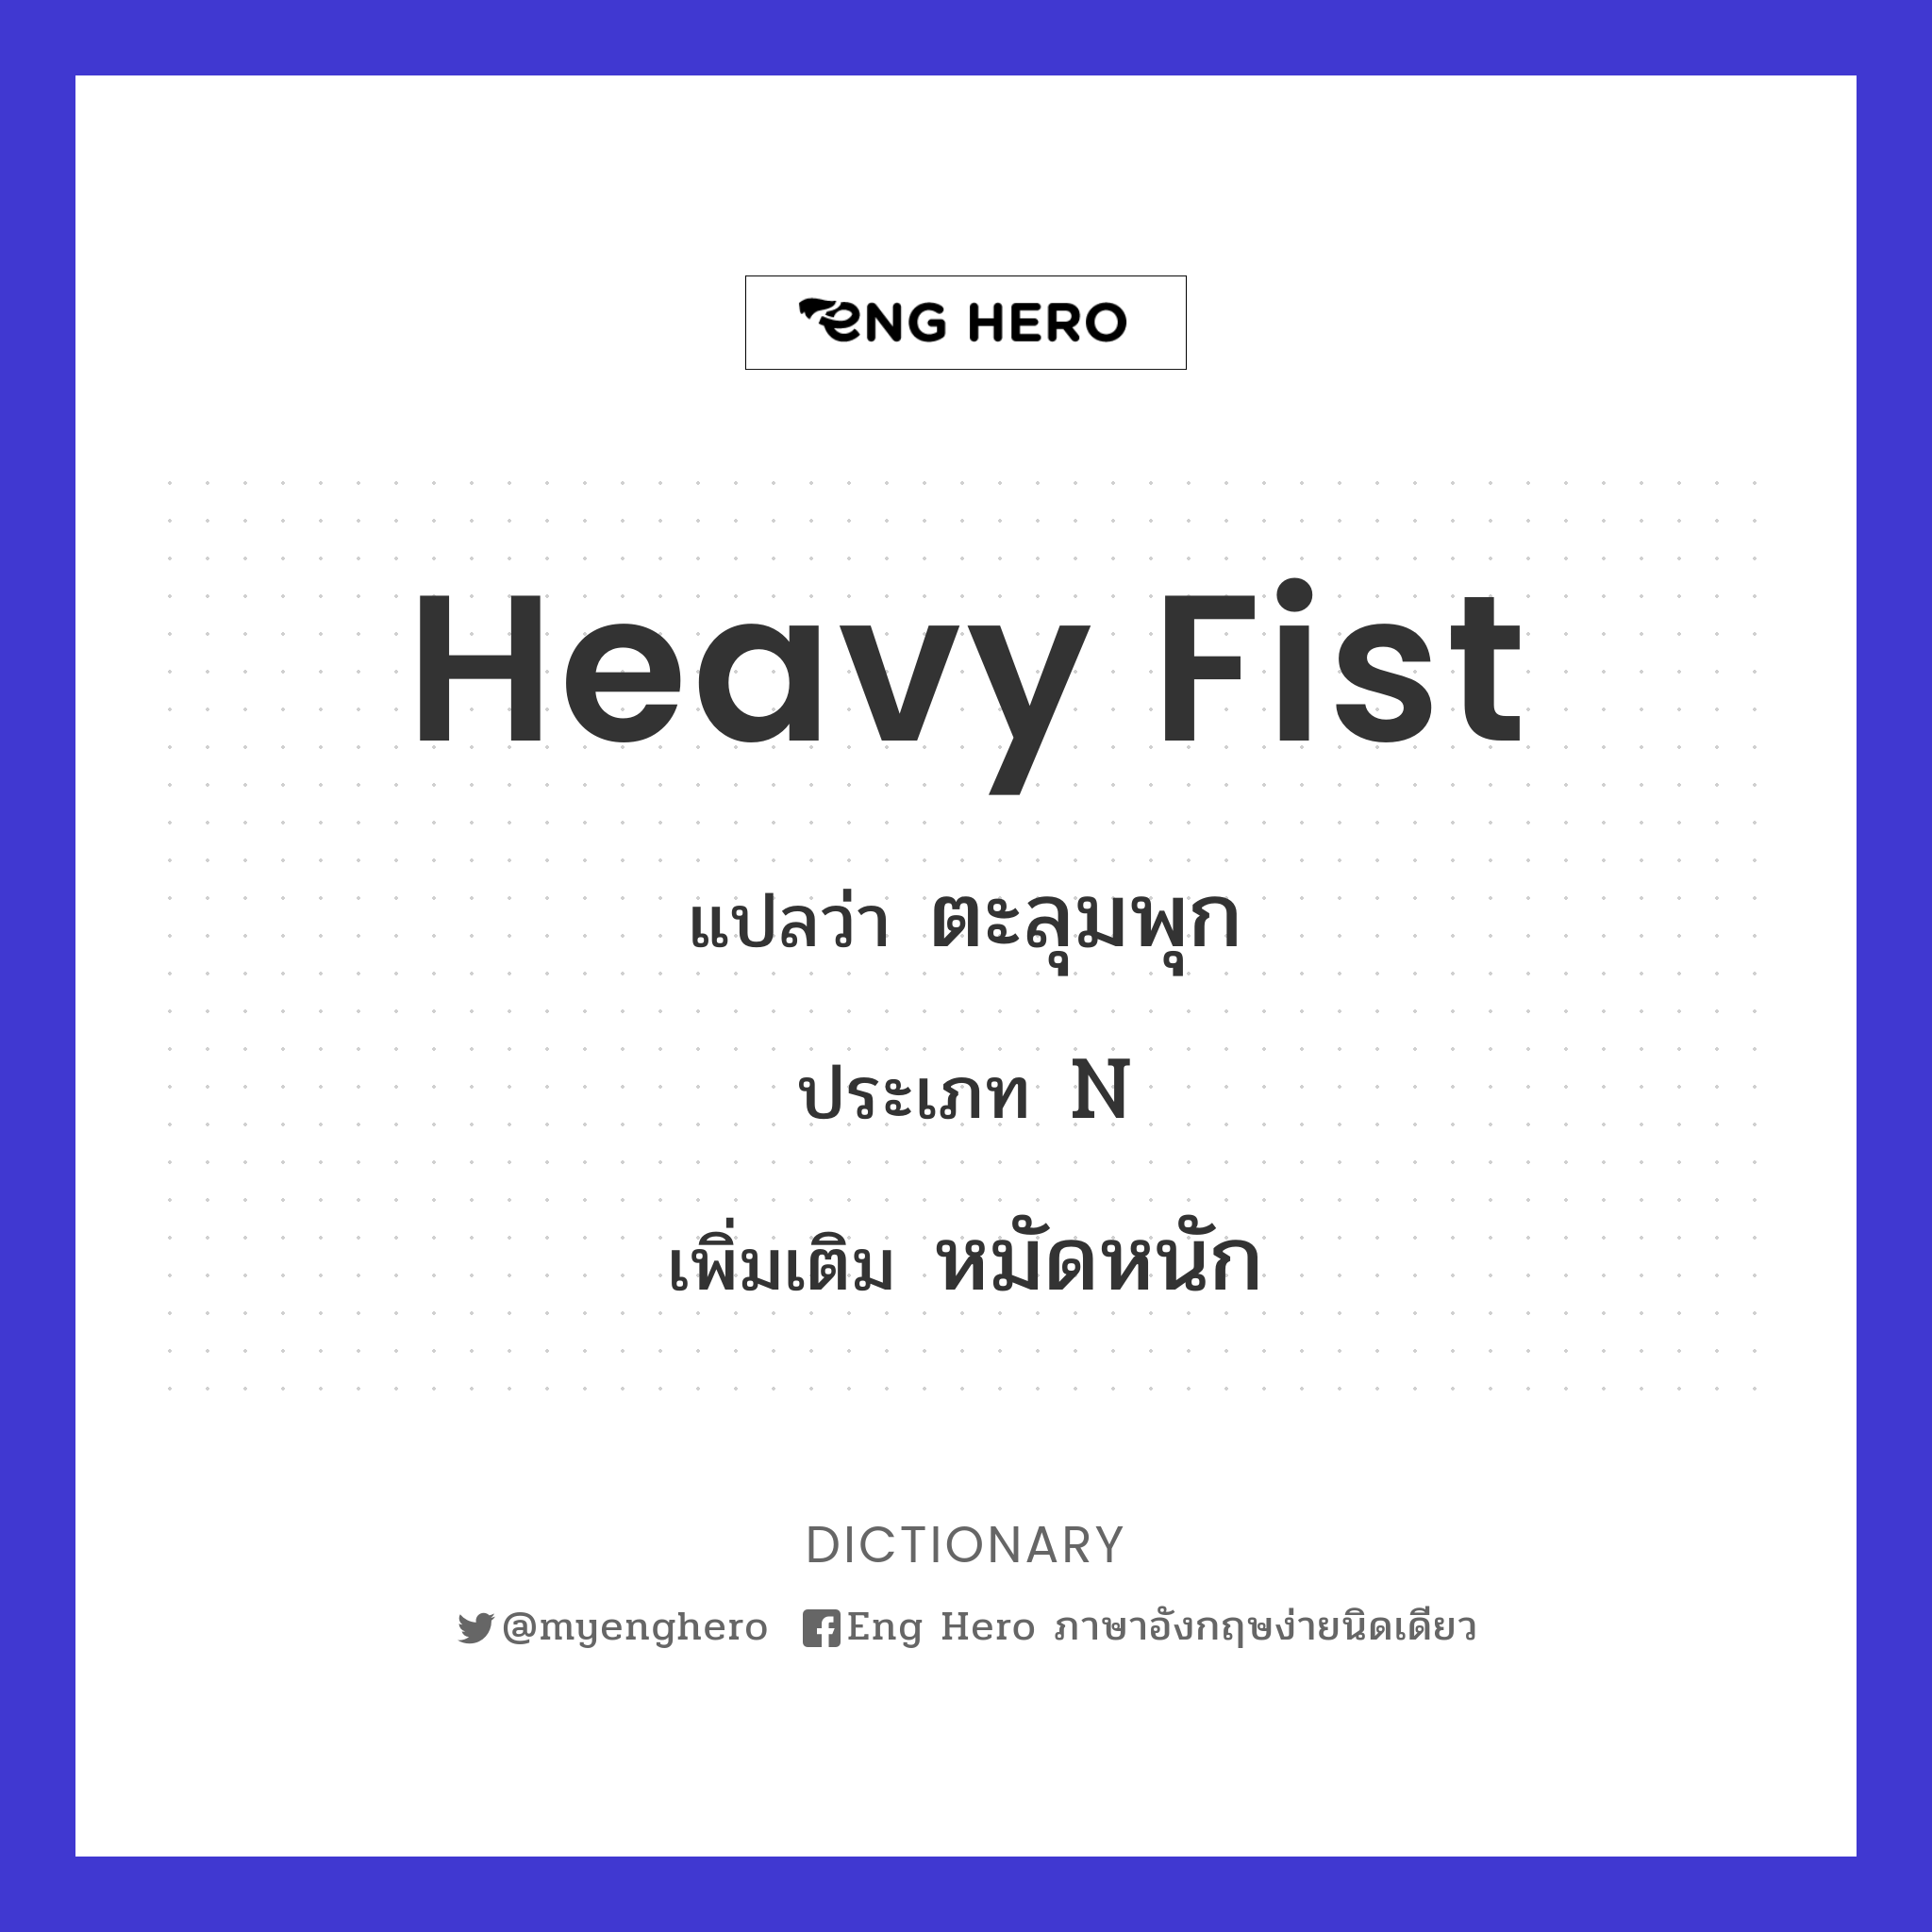 heavy fist